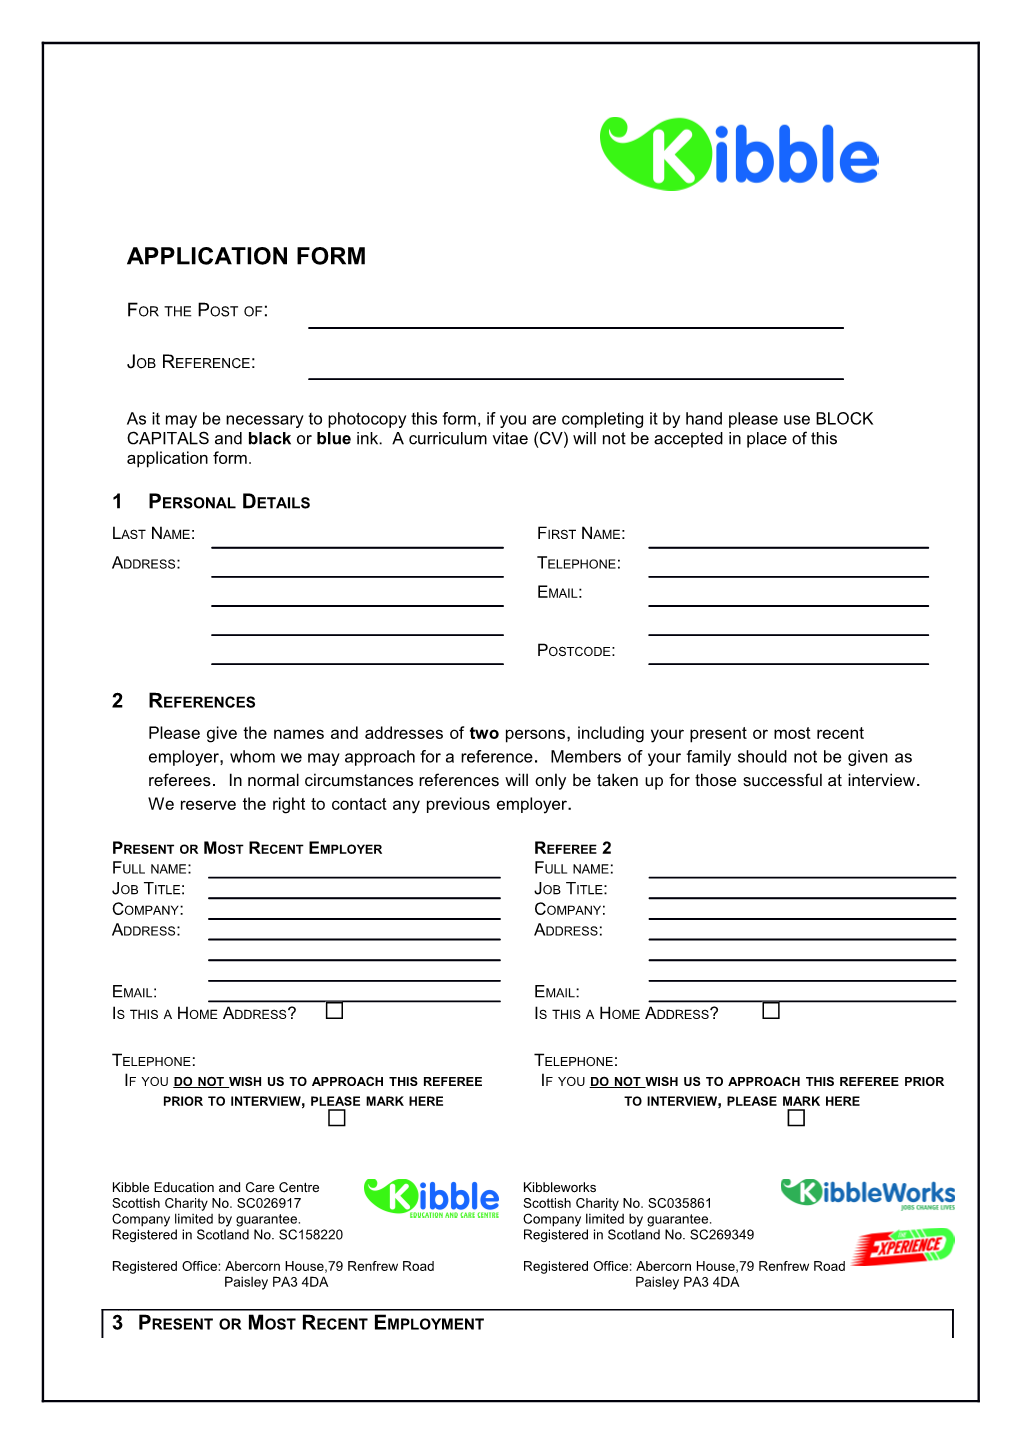 Kibble Application Form